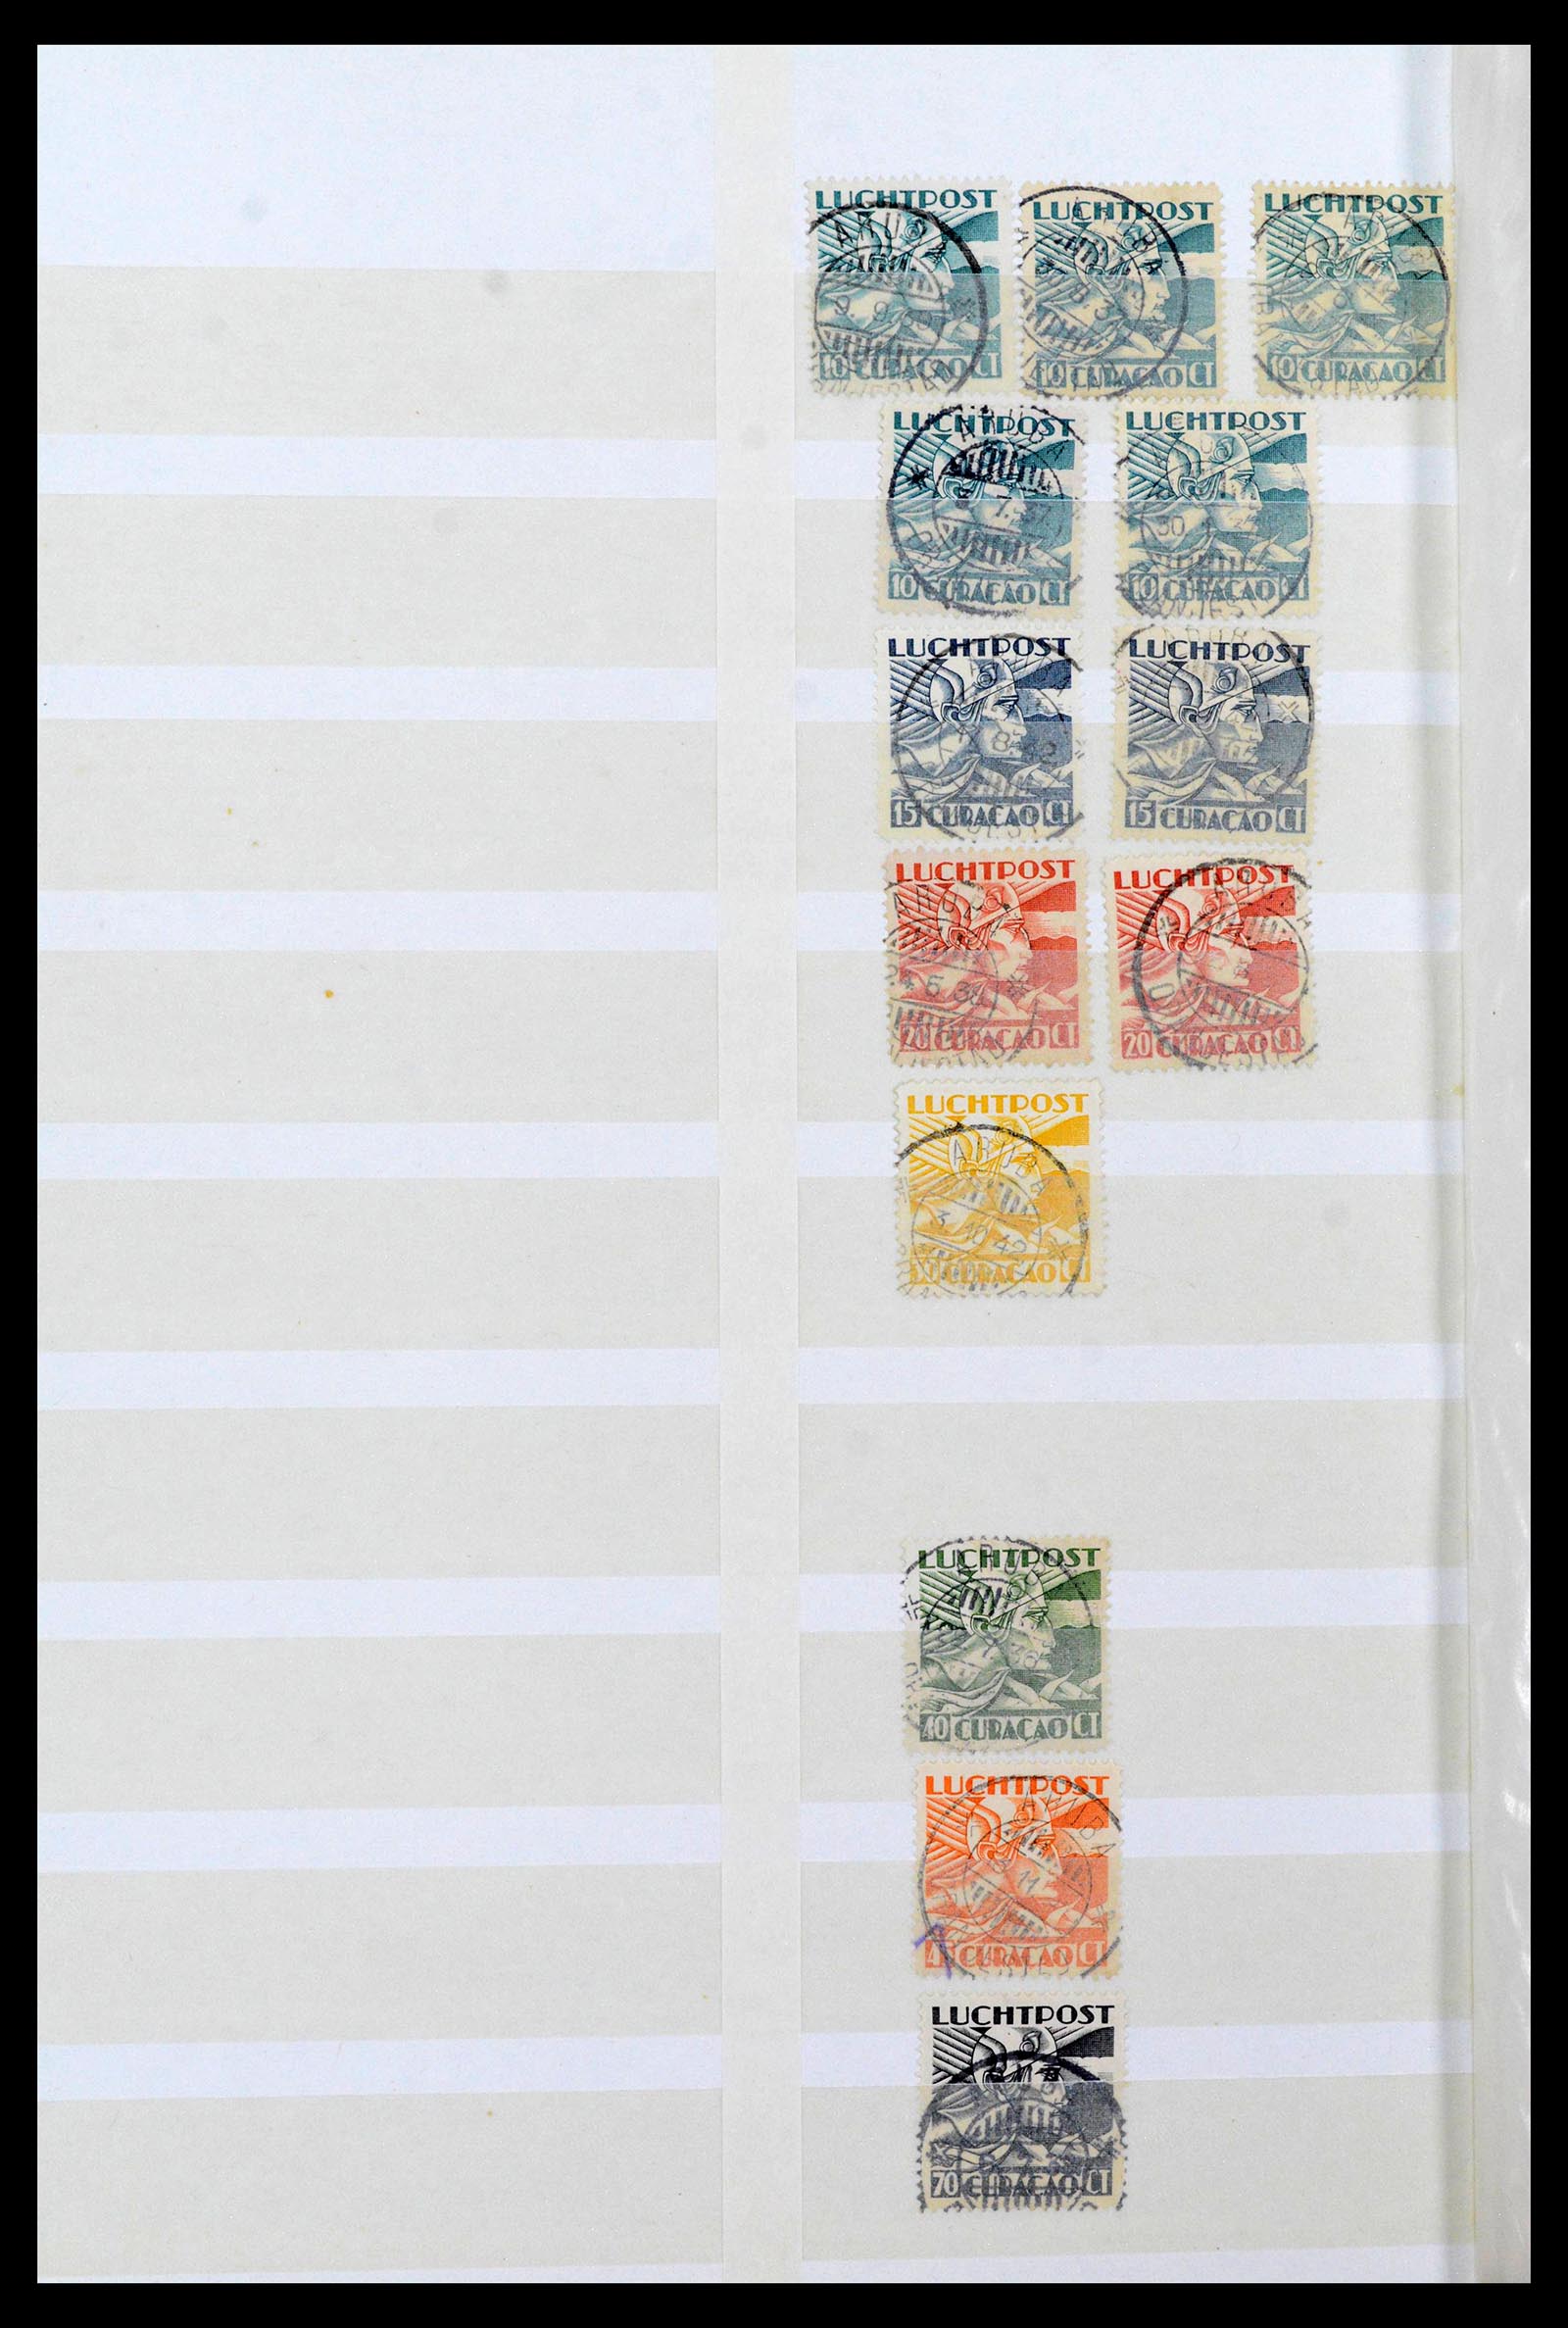 39541 0009 - Postzegelverzameling 39541 Curaçao/Antillen stempels 1873-1970.